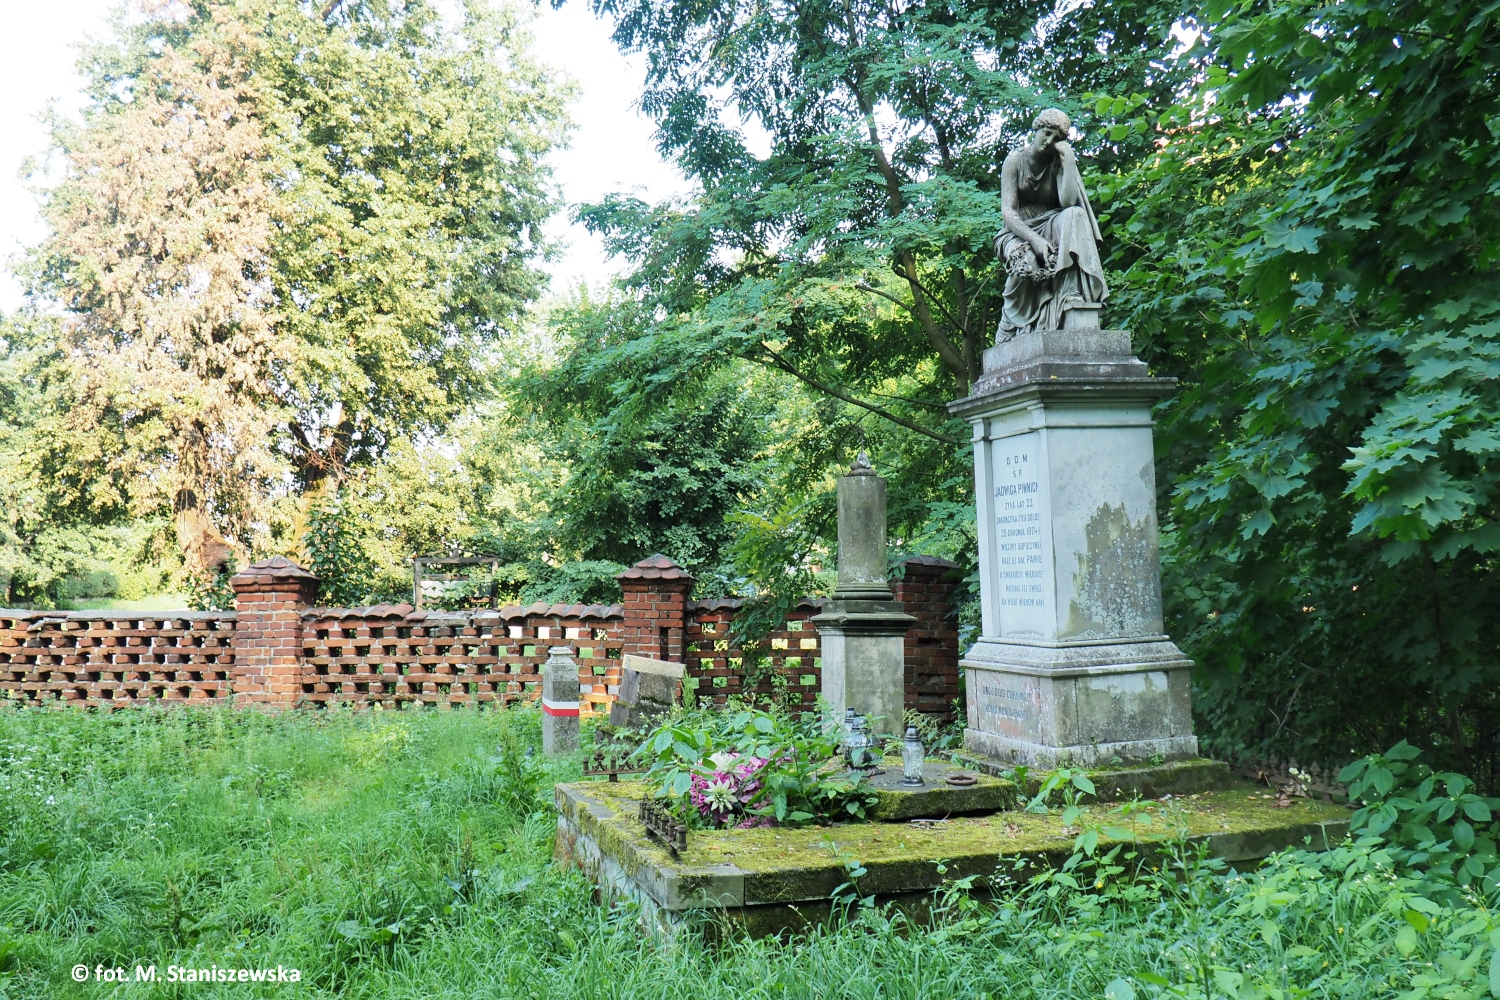 Przykocielny cmentarz w Sikorzu, zaoony na przeomie XIV i XV wieku. Posiada ogrodzenie z cegy oraz bram datowan na rok 1767. Najpiknie­jszym  nagrobkiem z biaego marmuru jest grb Jadwigi Piwnickiej, zmarej w 1874 r.